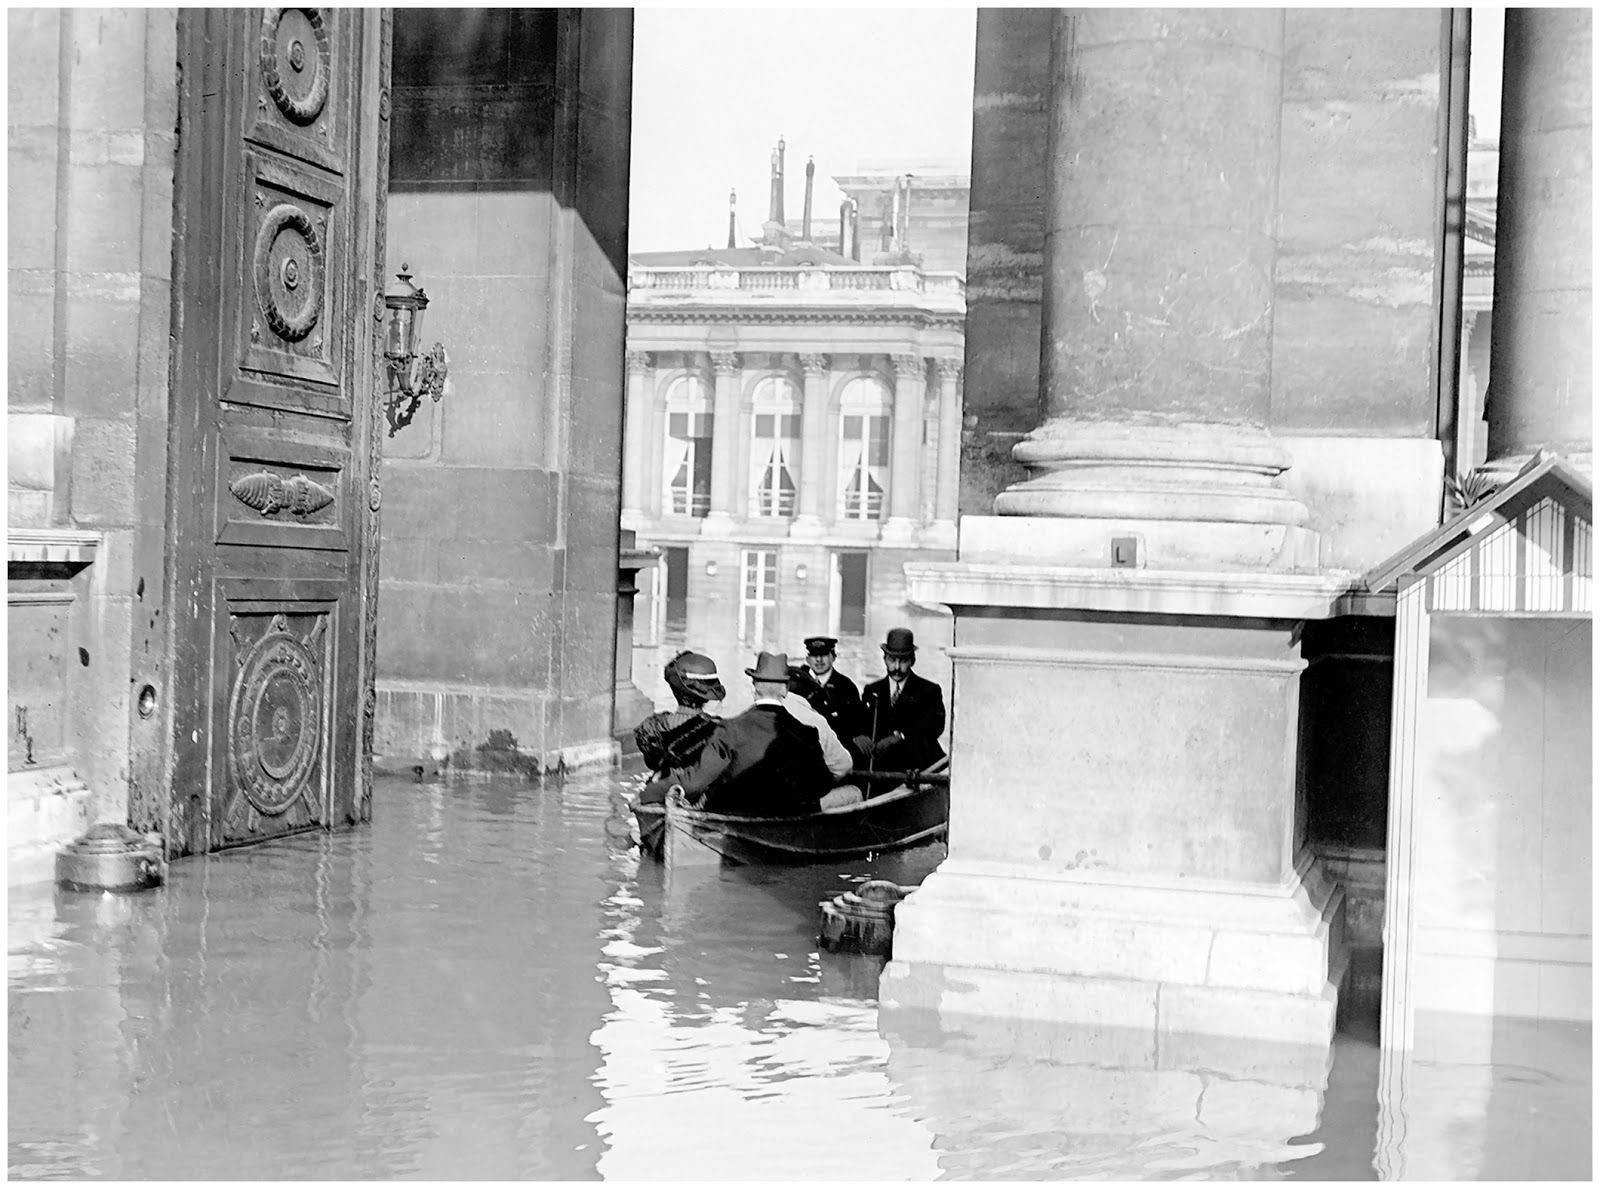 La chambre des députes Paris floods in 1910 The House of Representatives_1.jpg